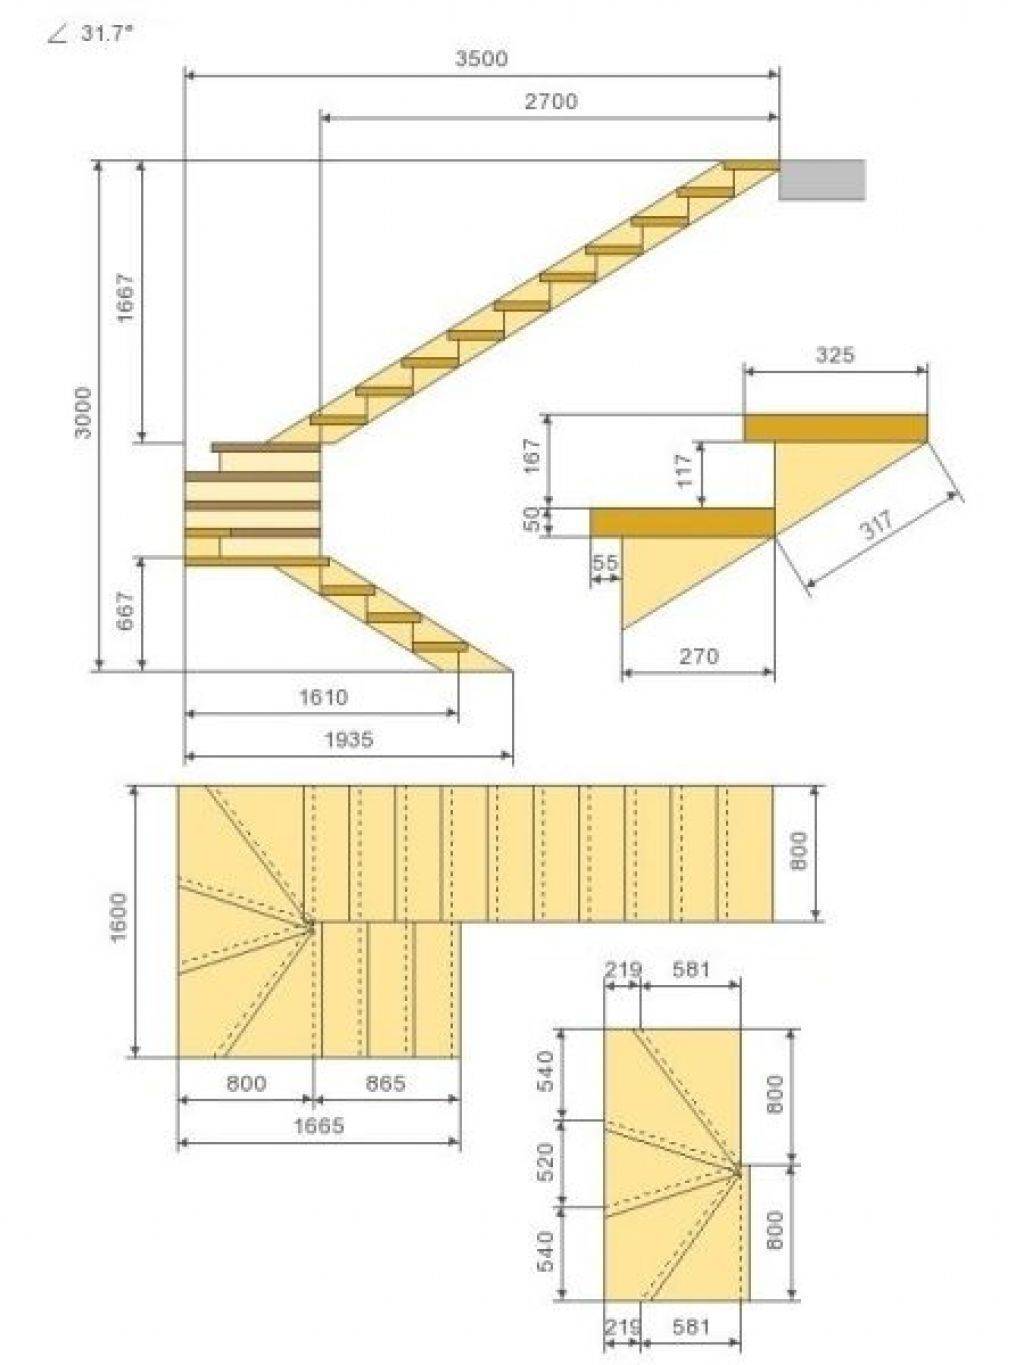 Расчет лестницы на второй этаж с забежными ступенями с поворотом на 90, 180 – как рассчитать деревянную и металлическую лестницу